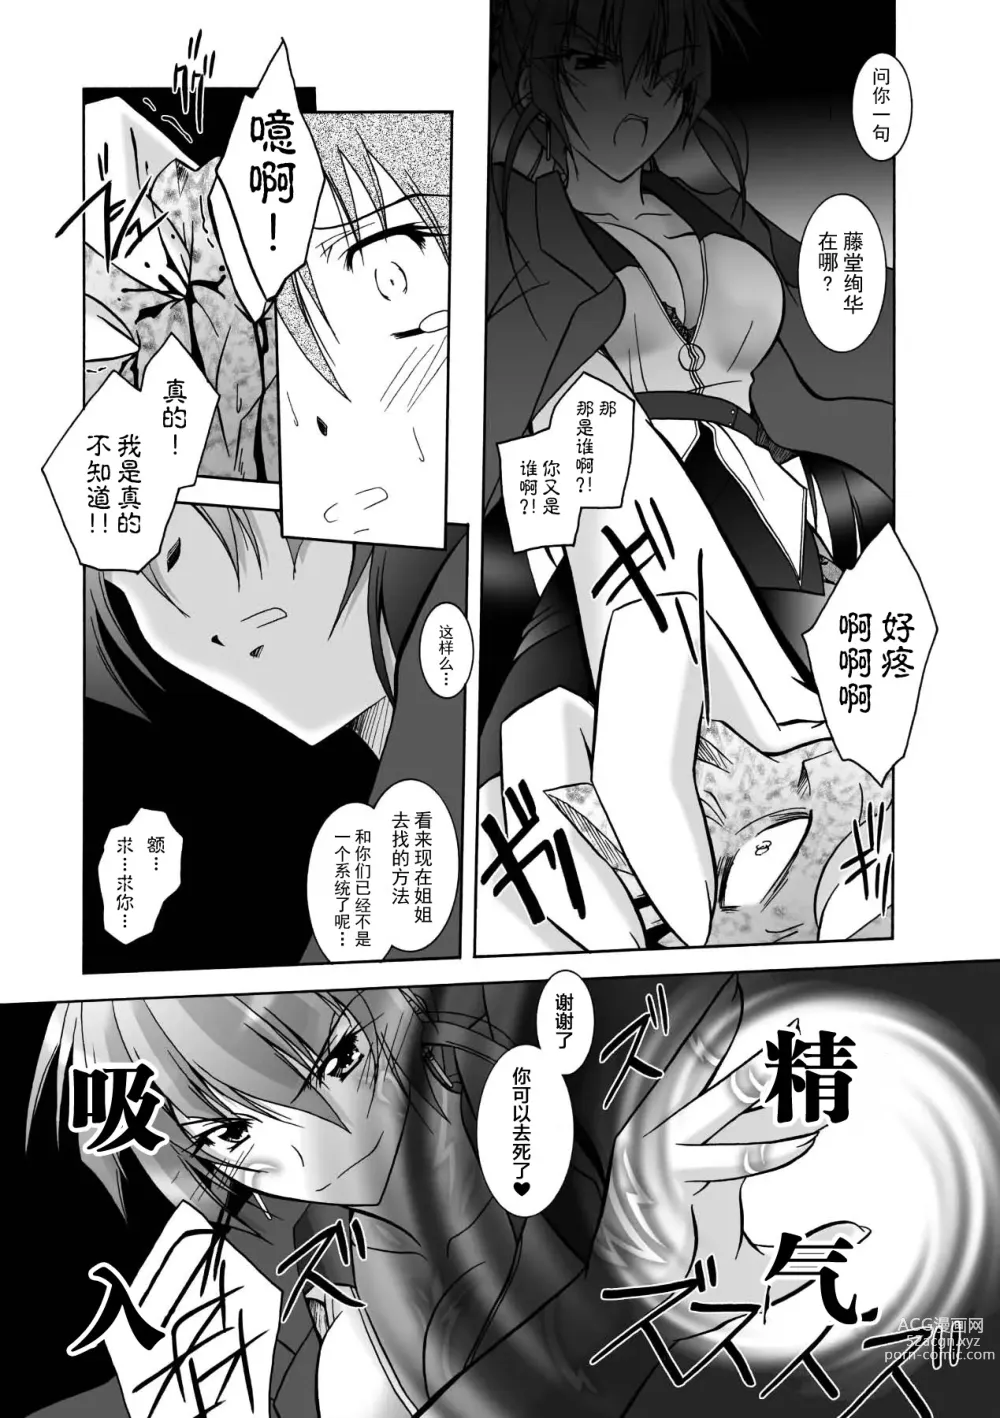 Page 159 of manga Matantei Toudou Shizuka no Inyou Jikenbo